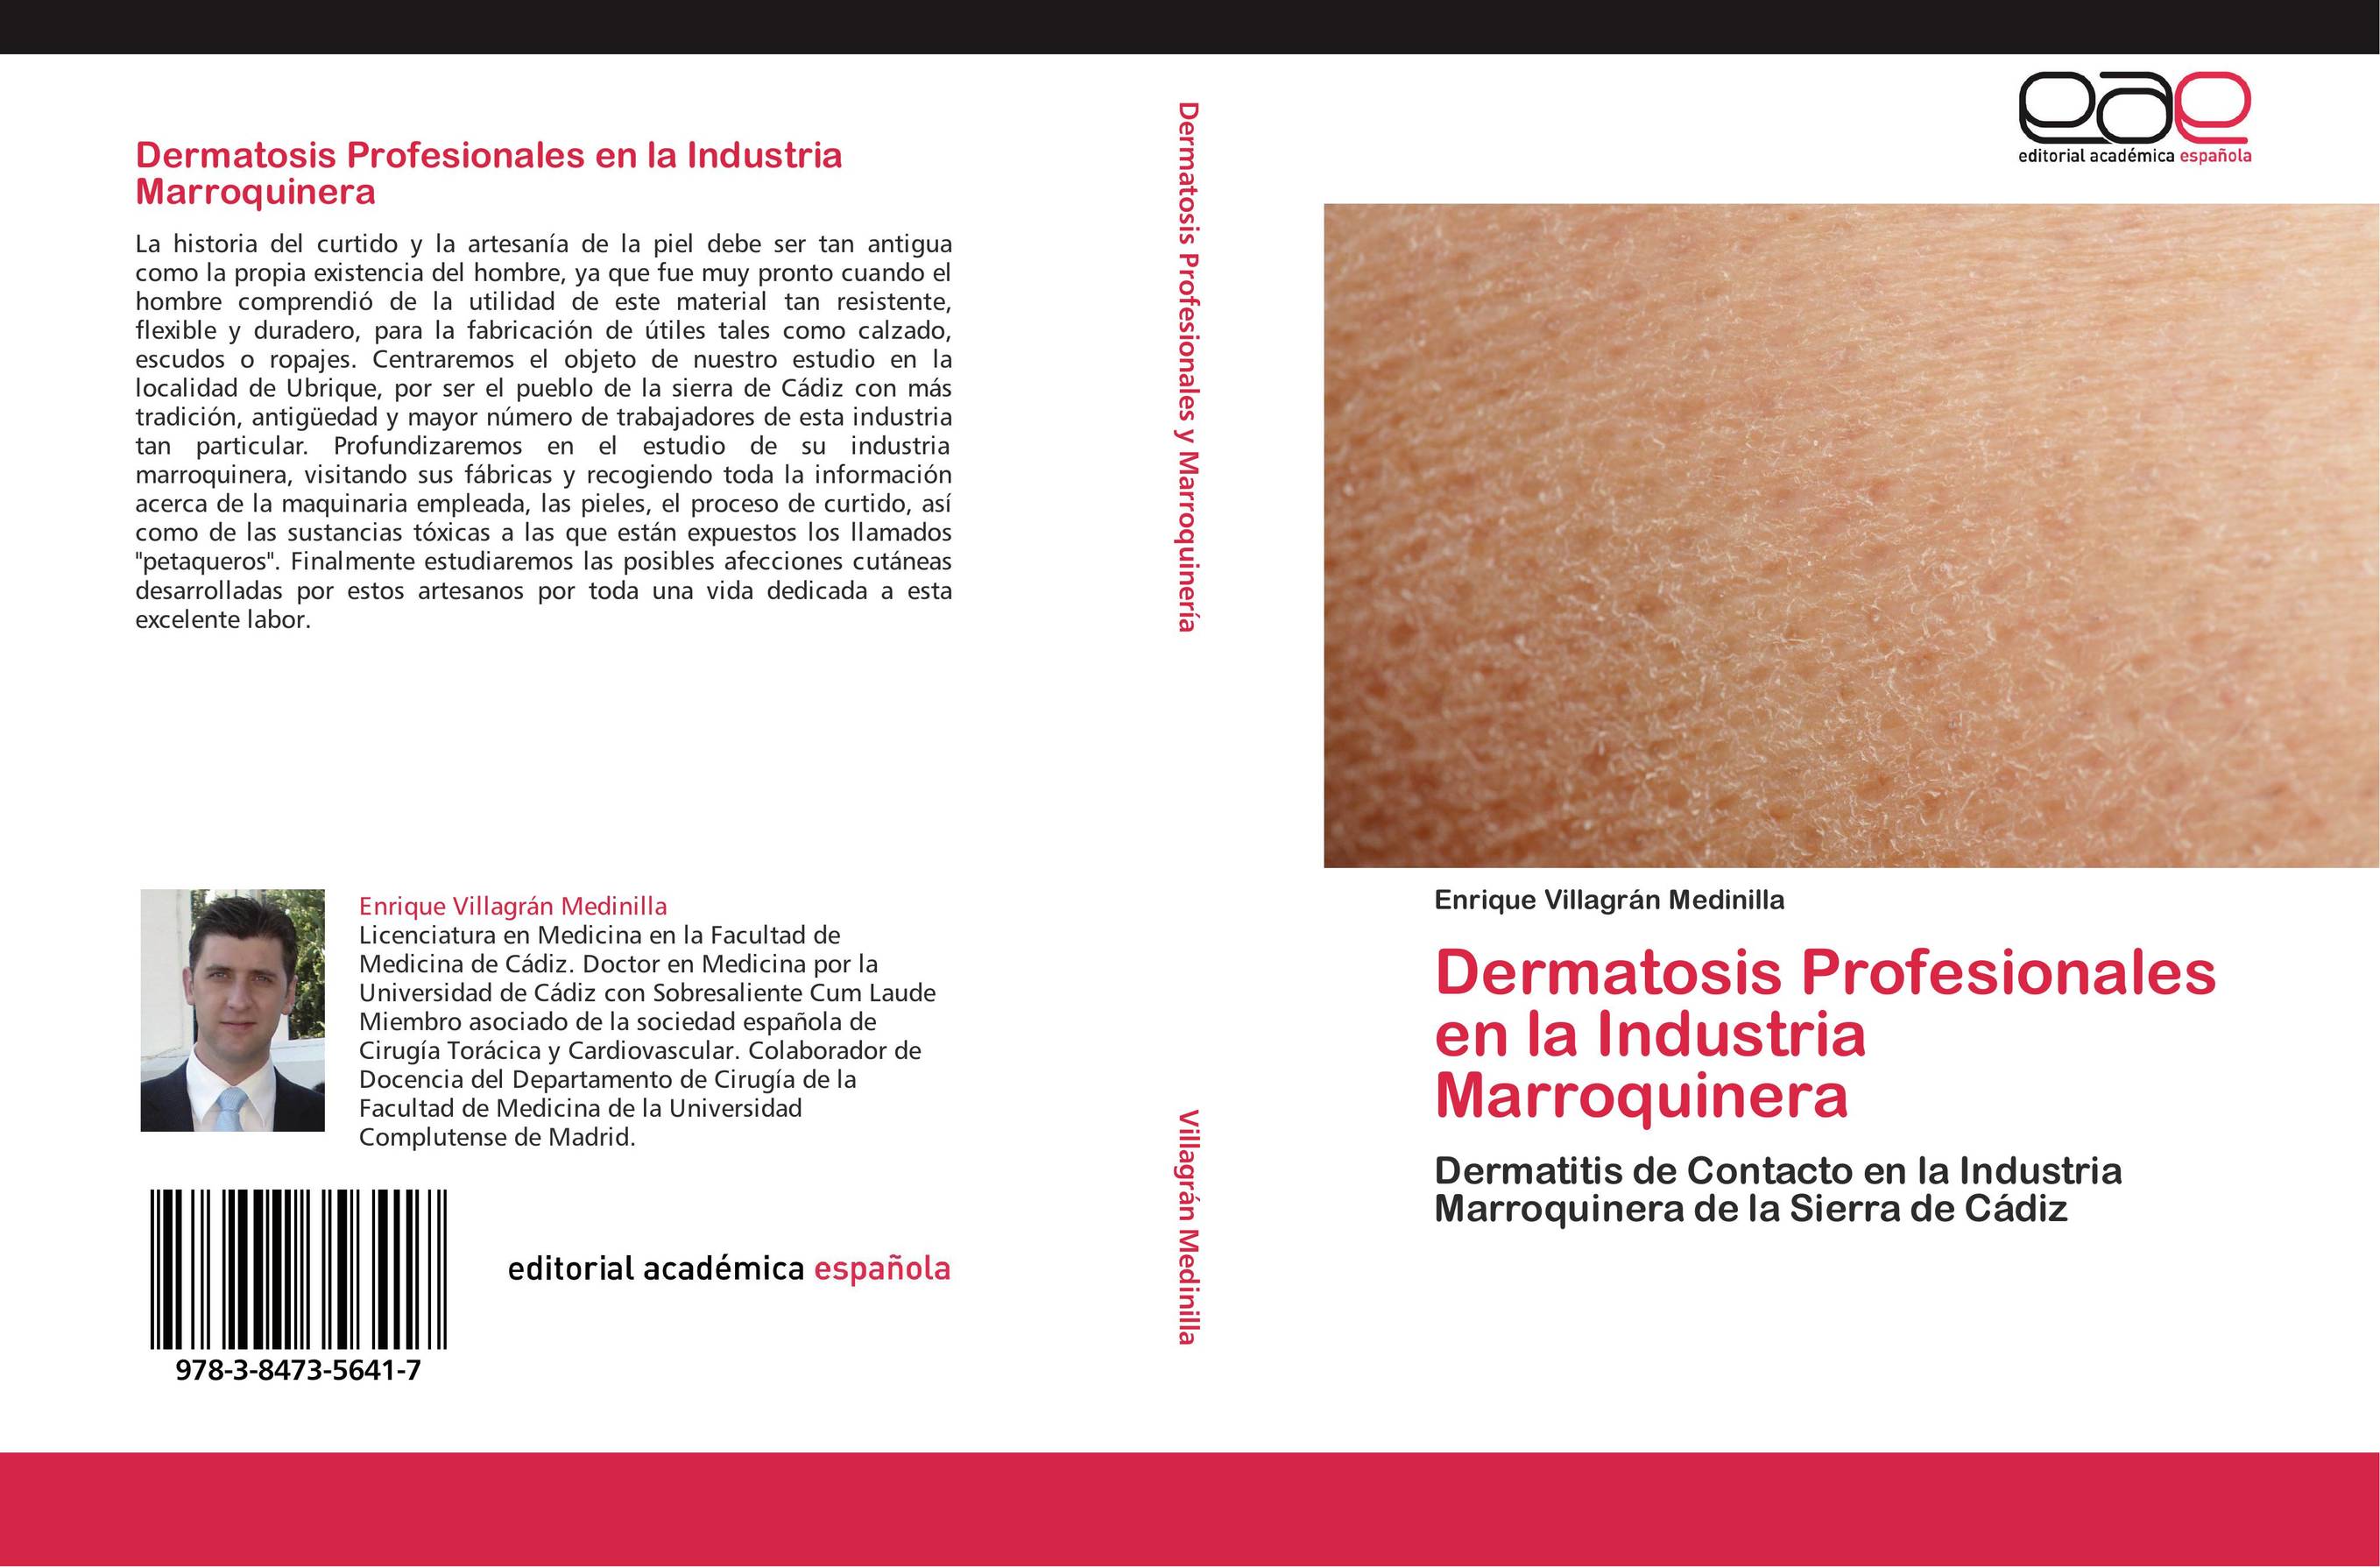 Dermatosis Profesionales en la Industria Marroquinera